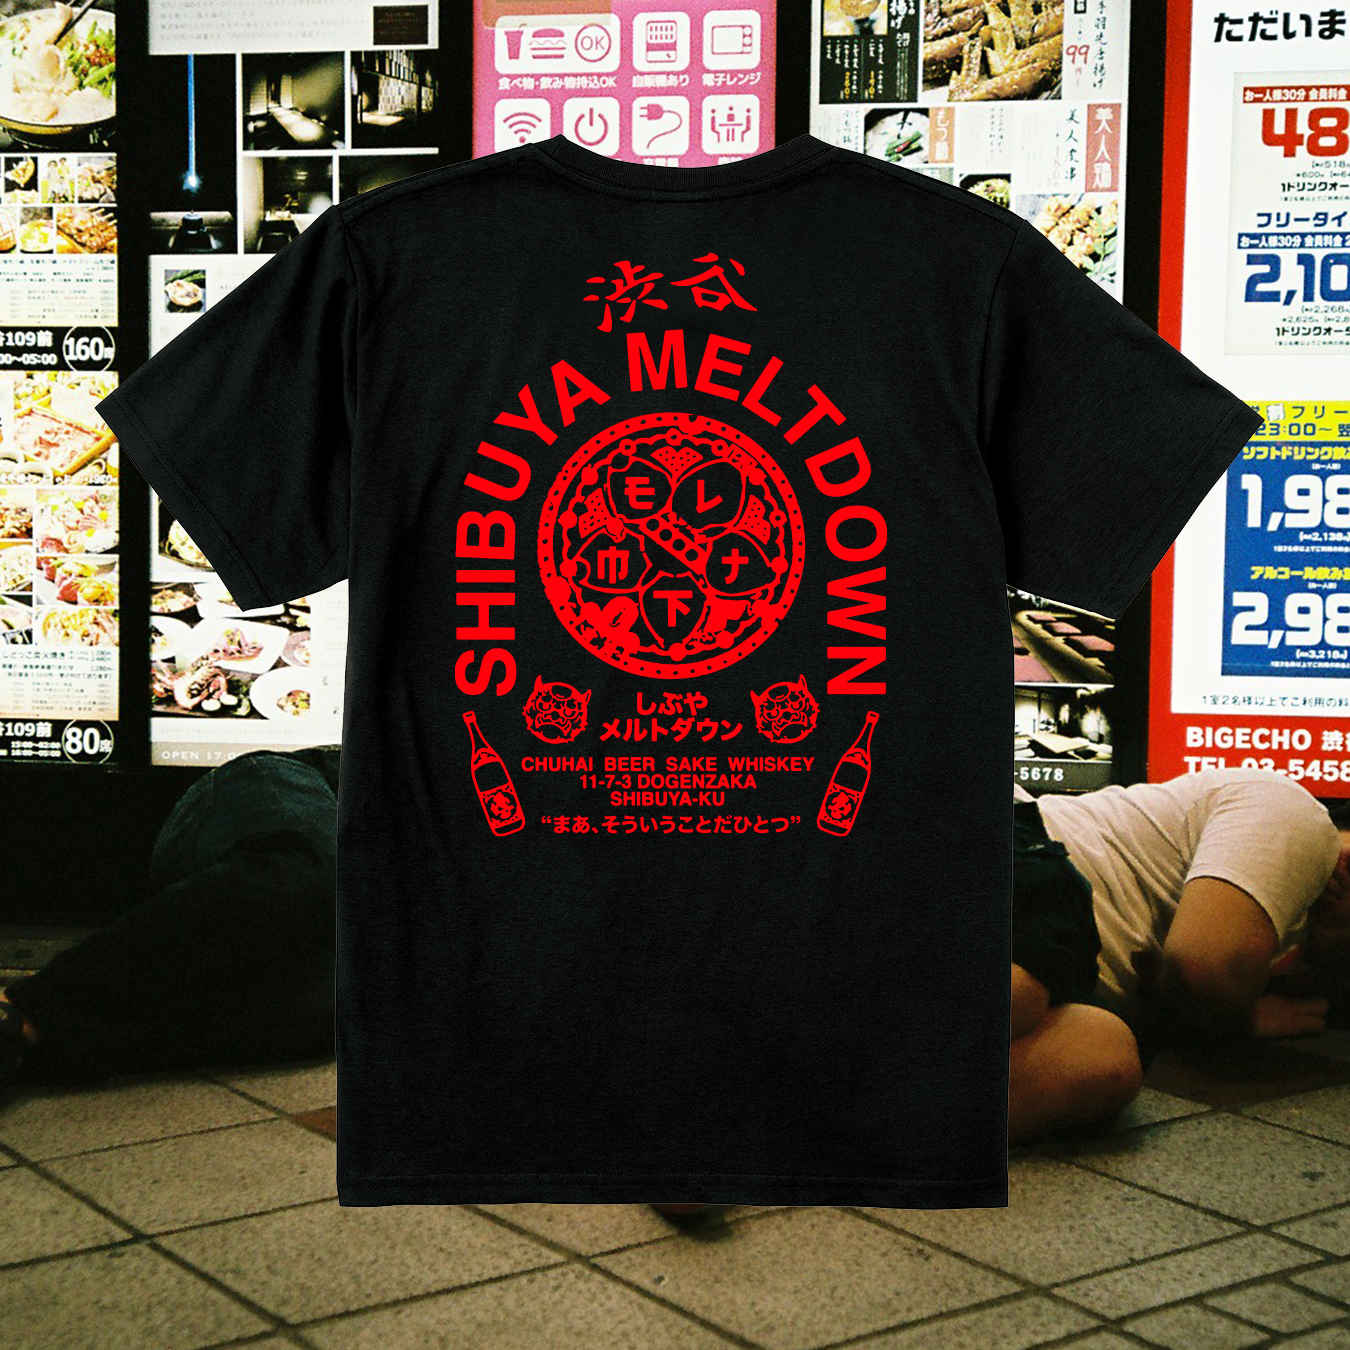 Shibuya Meltdown Jyuunen Anniversary T-Shirt